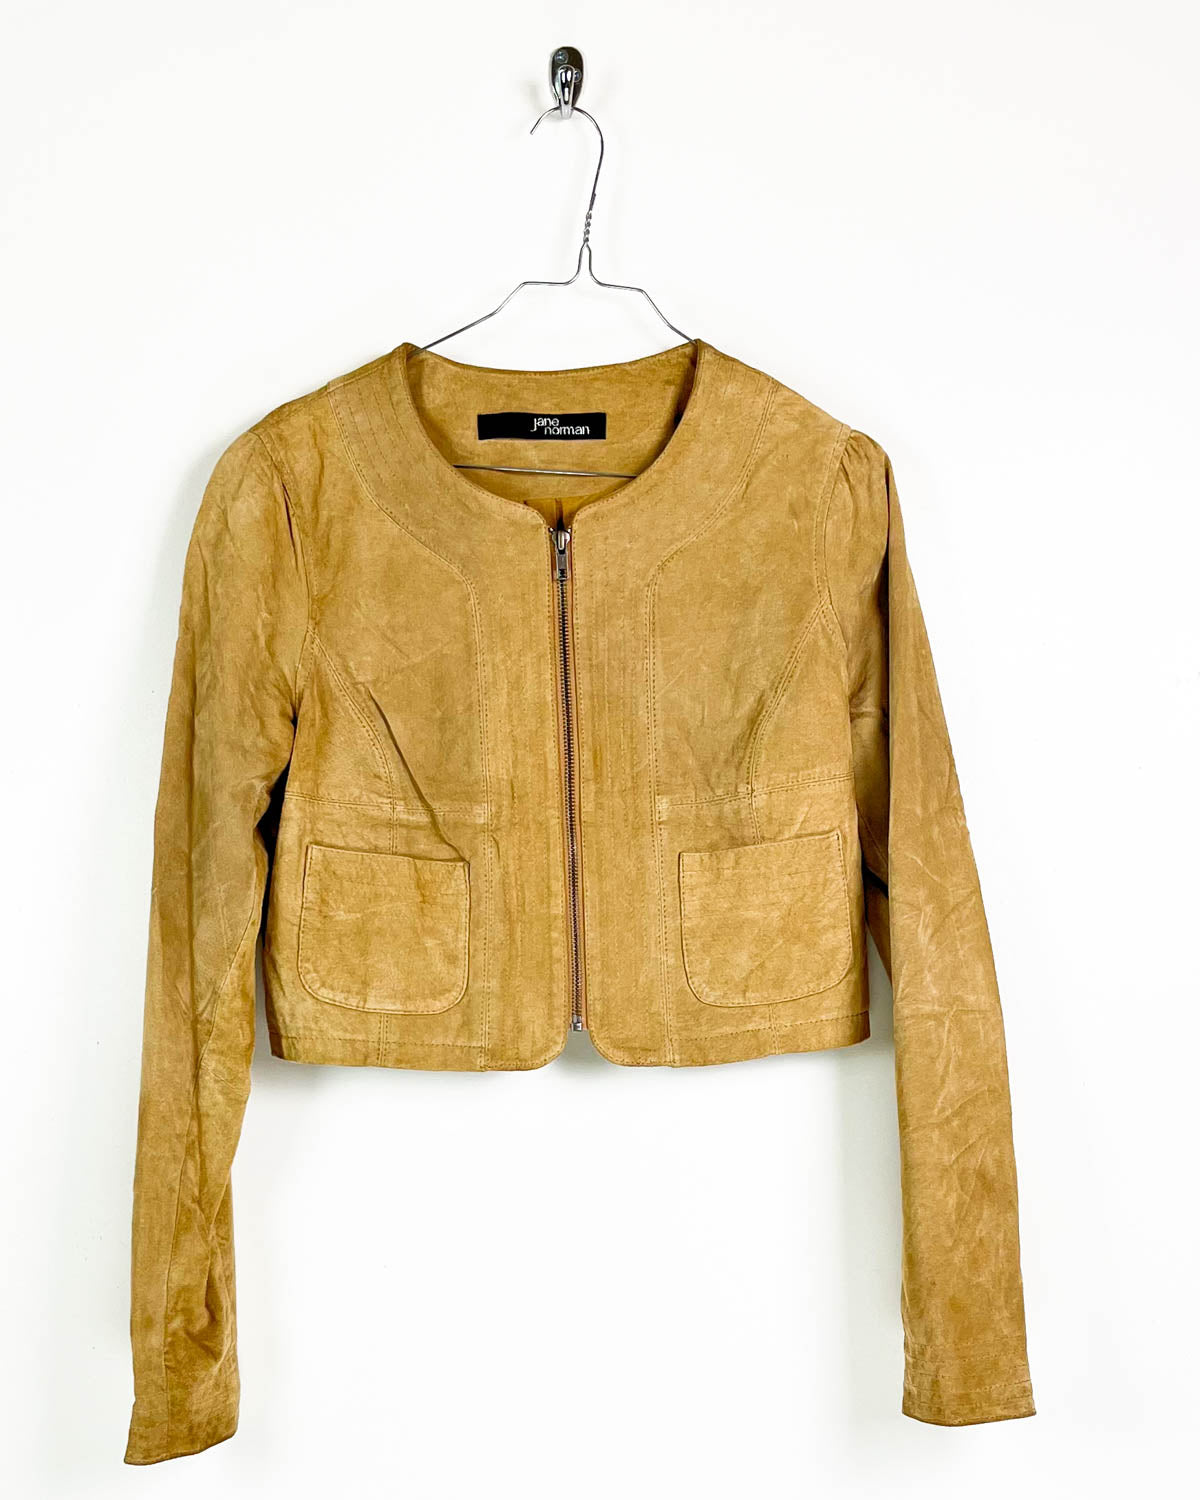 Vintage Half Leather Jacket - Taglia S